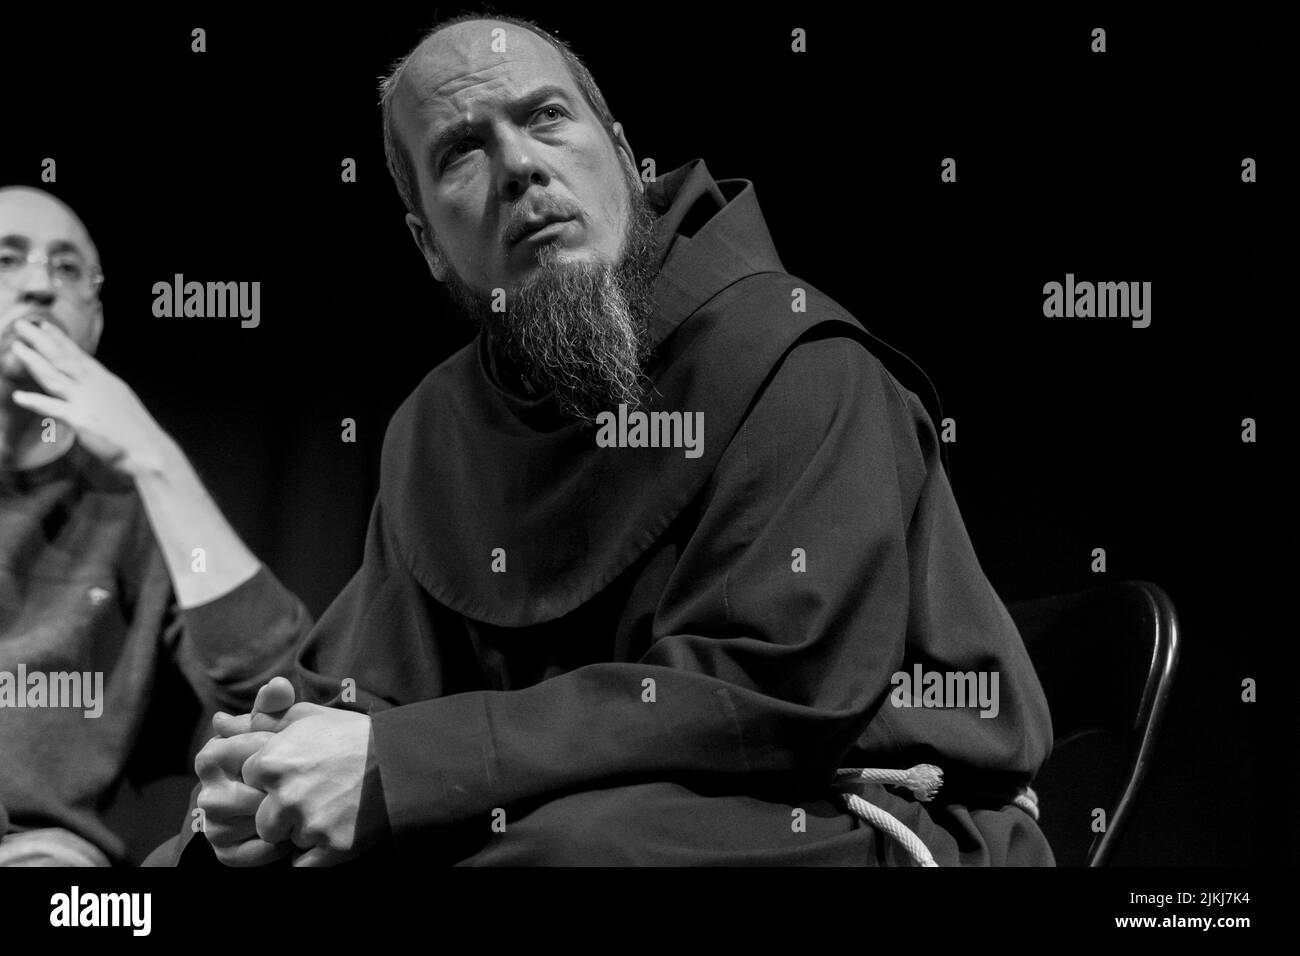 Un uomo con una barba seduta su una sedia in una discussione contro l'odio tra tutte le religioni sacre indoor. Bianco e nero Foto Stock